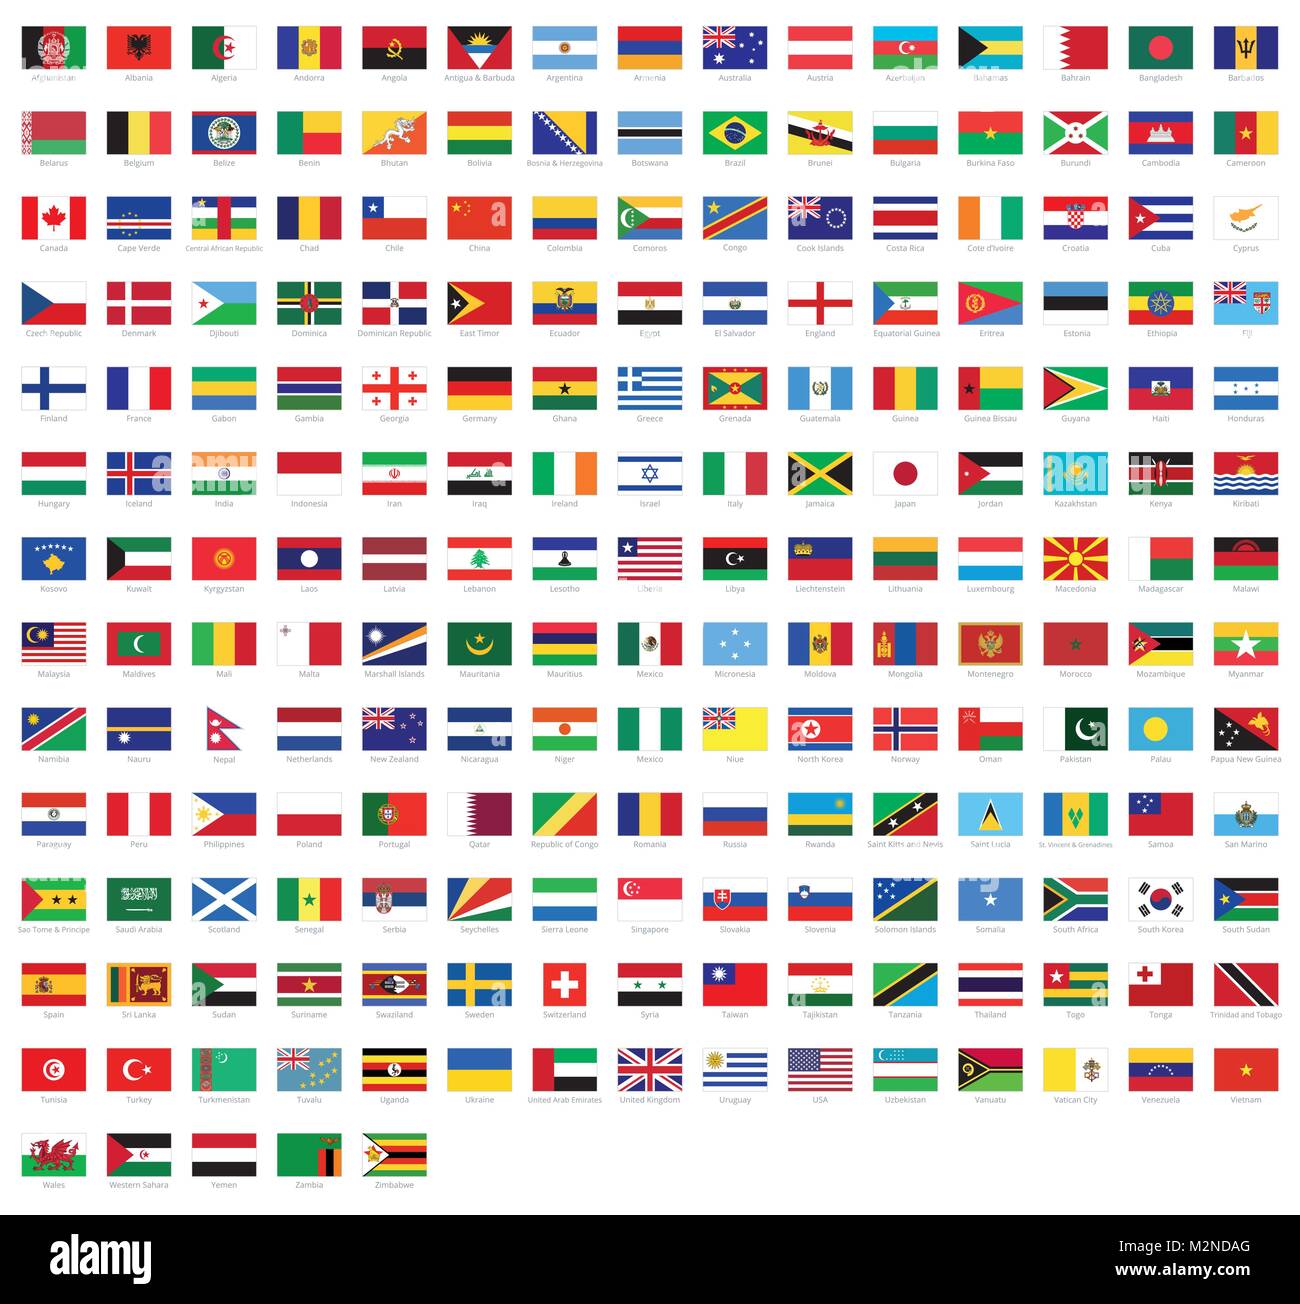 Länderflaggen - Kannst du die Flaggen richtig zuordnen? –